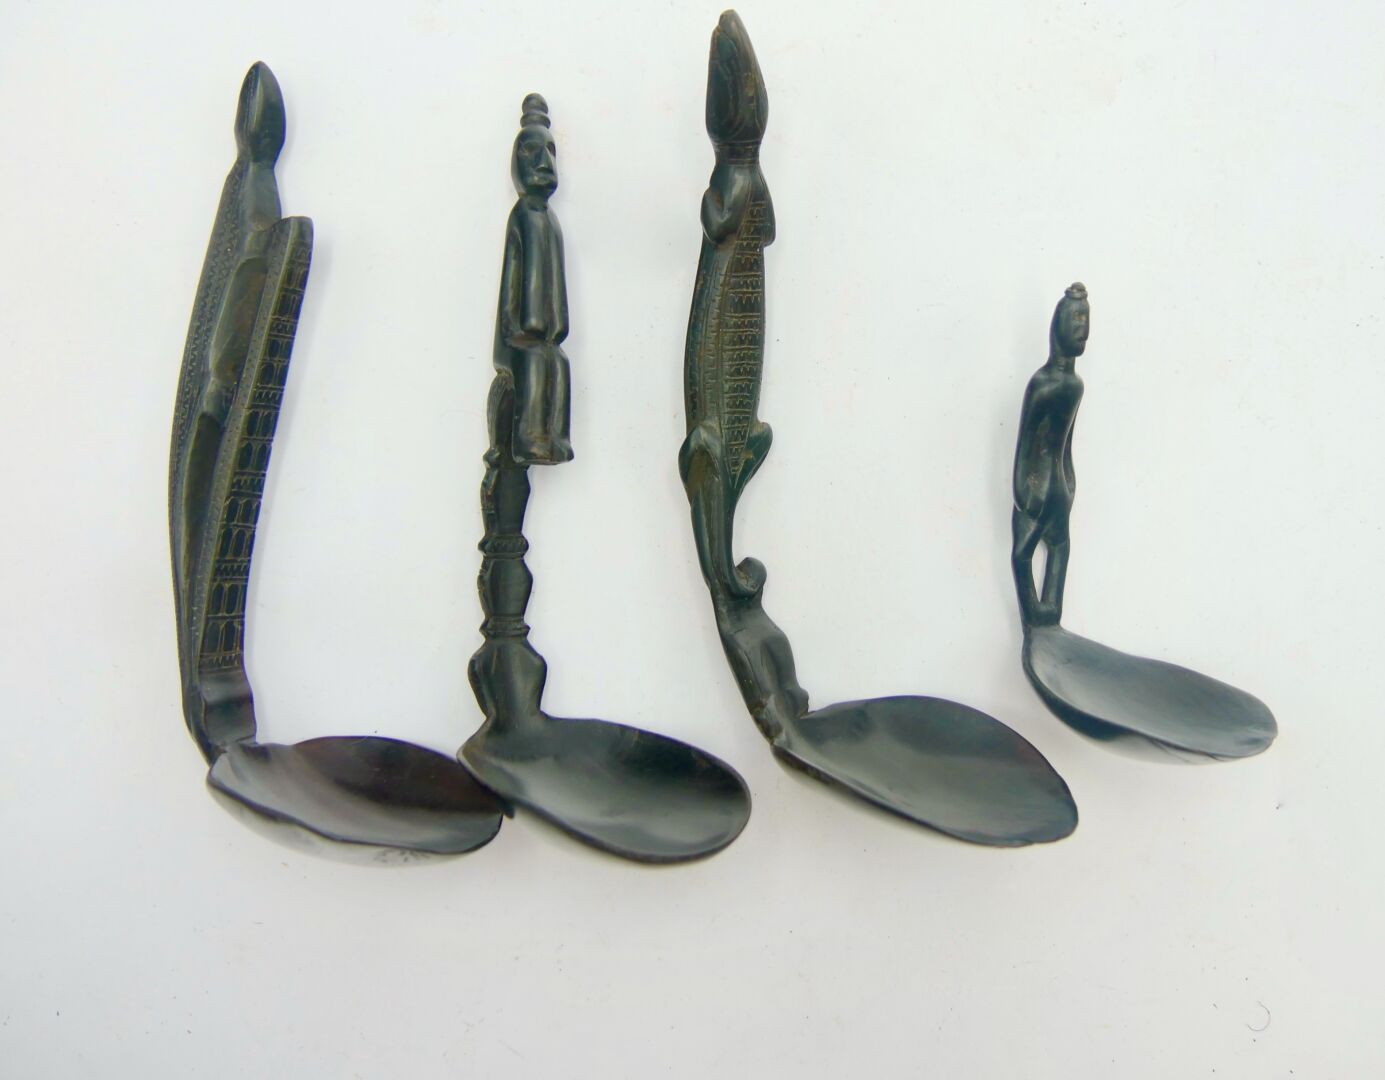 Null 一套四件亚洲类型的勺子

带有黑色铜锈的木材

长：9.5至16.5厘米。



雕刻着肖像的把手